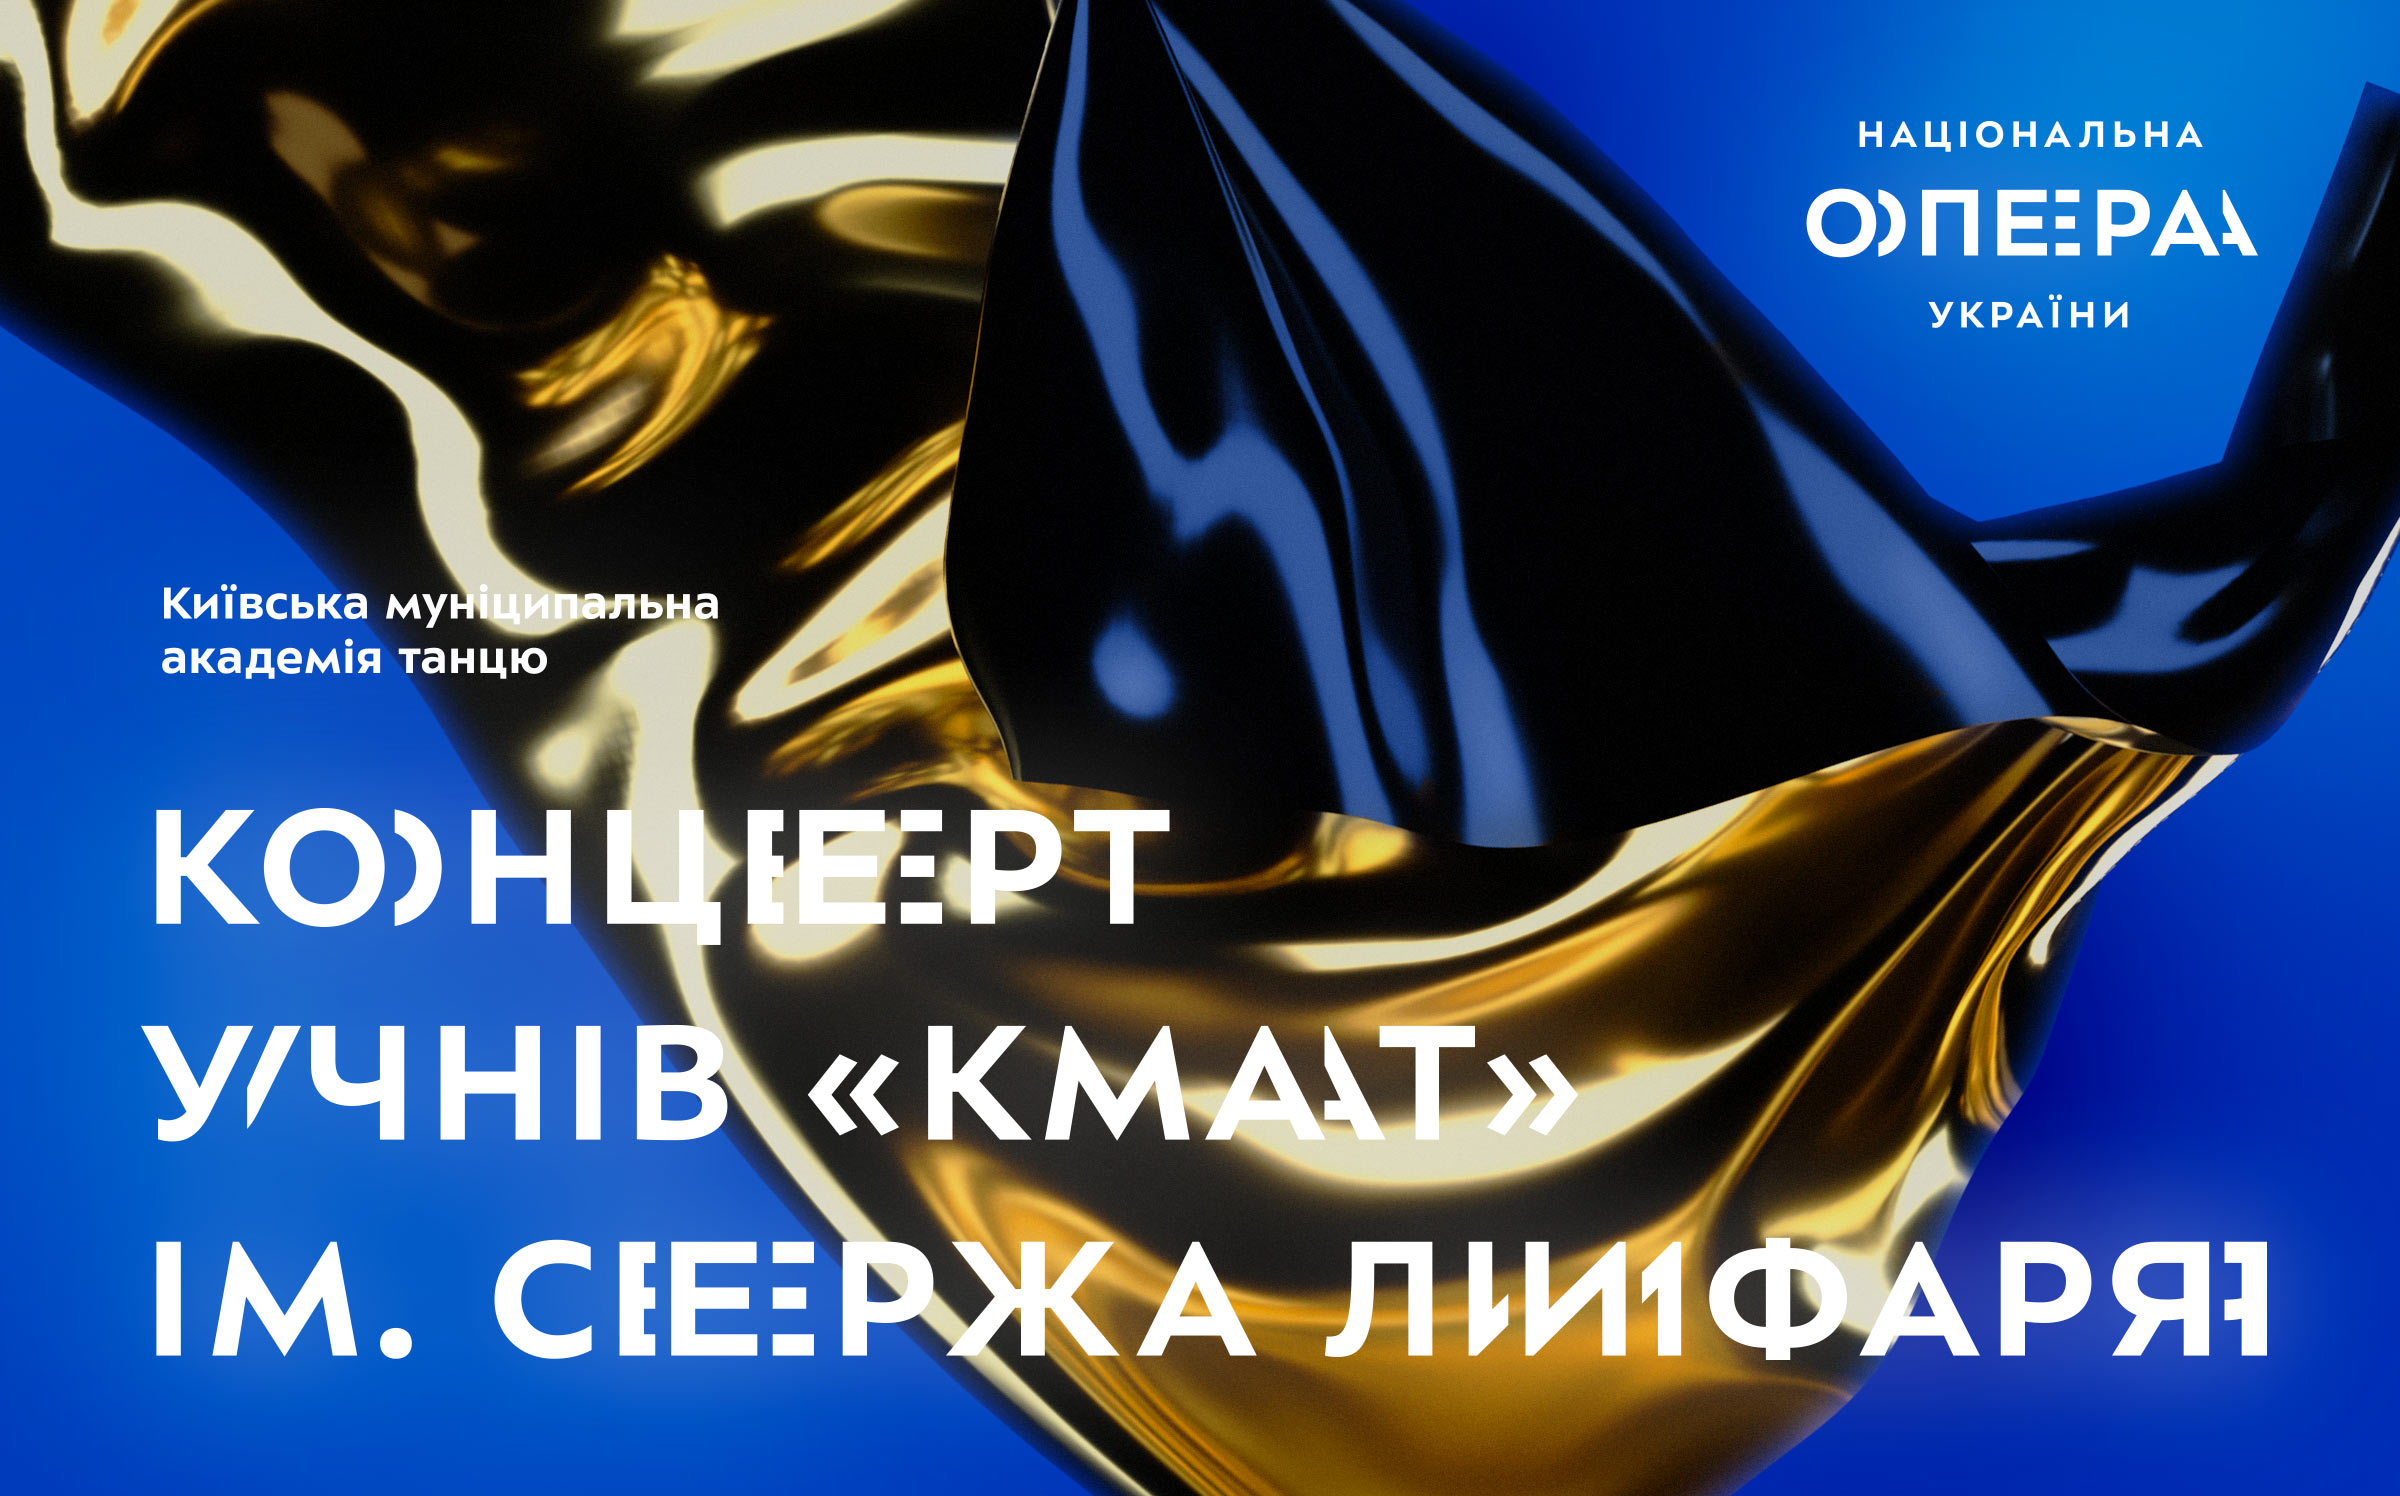 kyiv opera banner